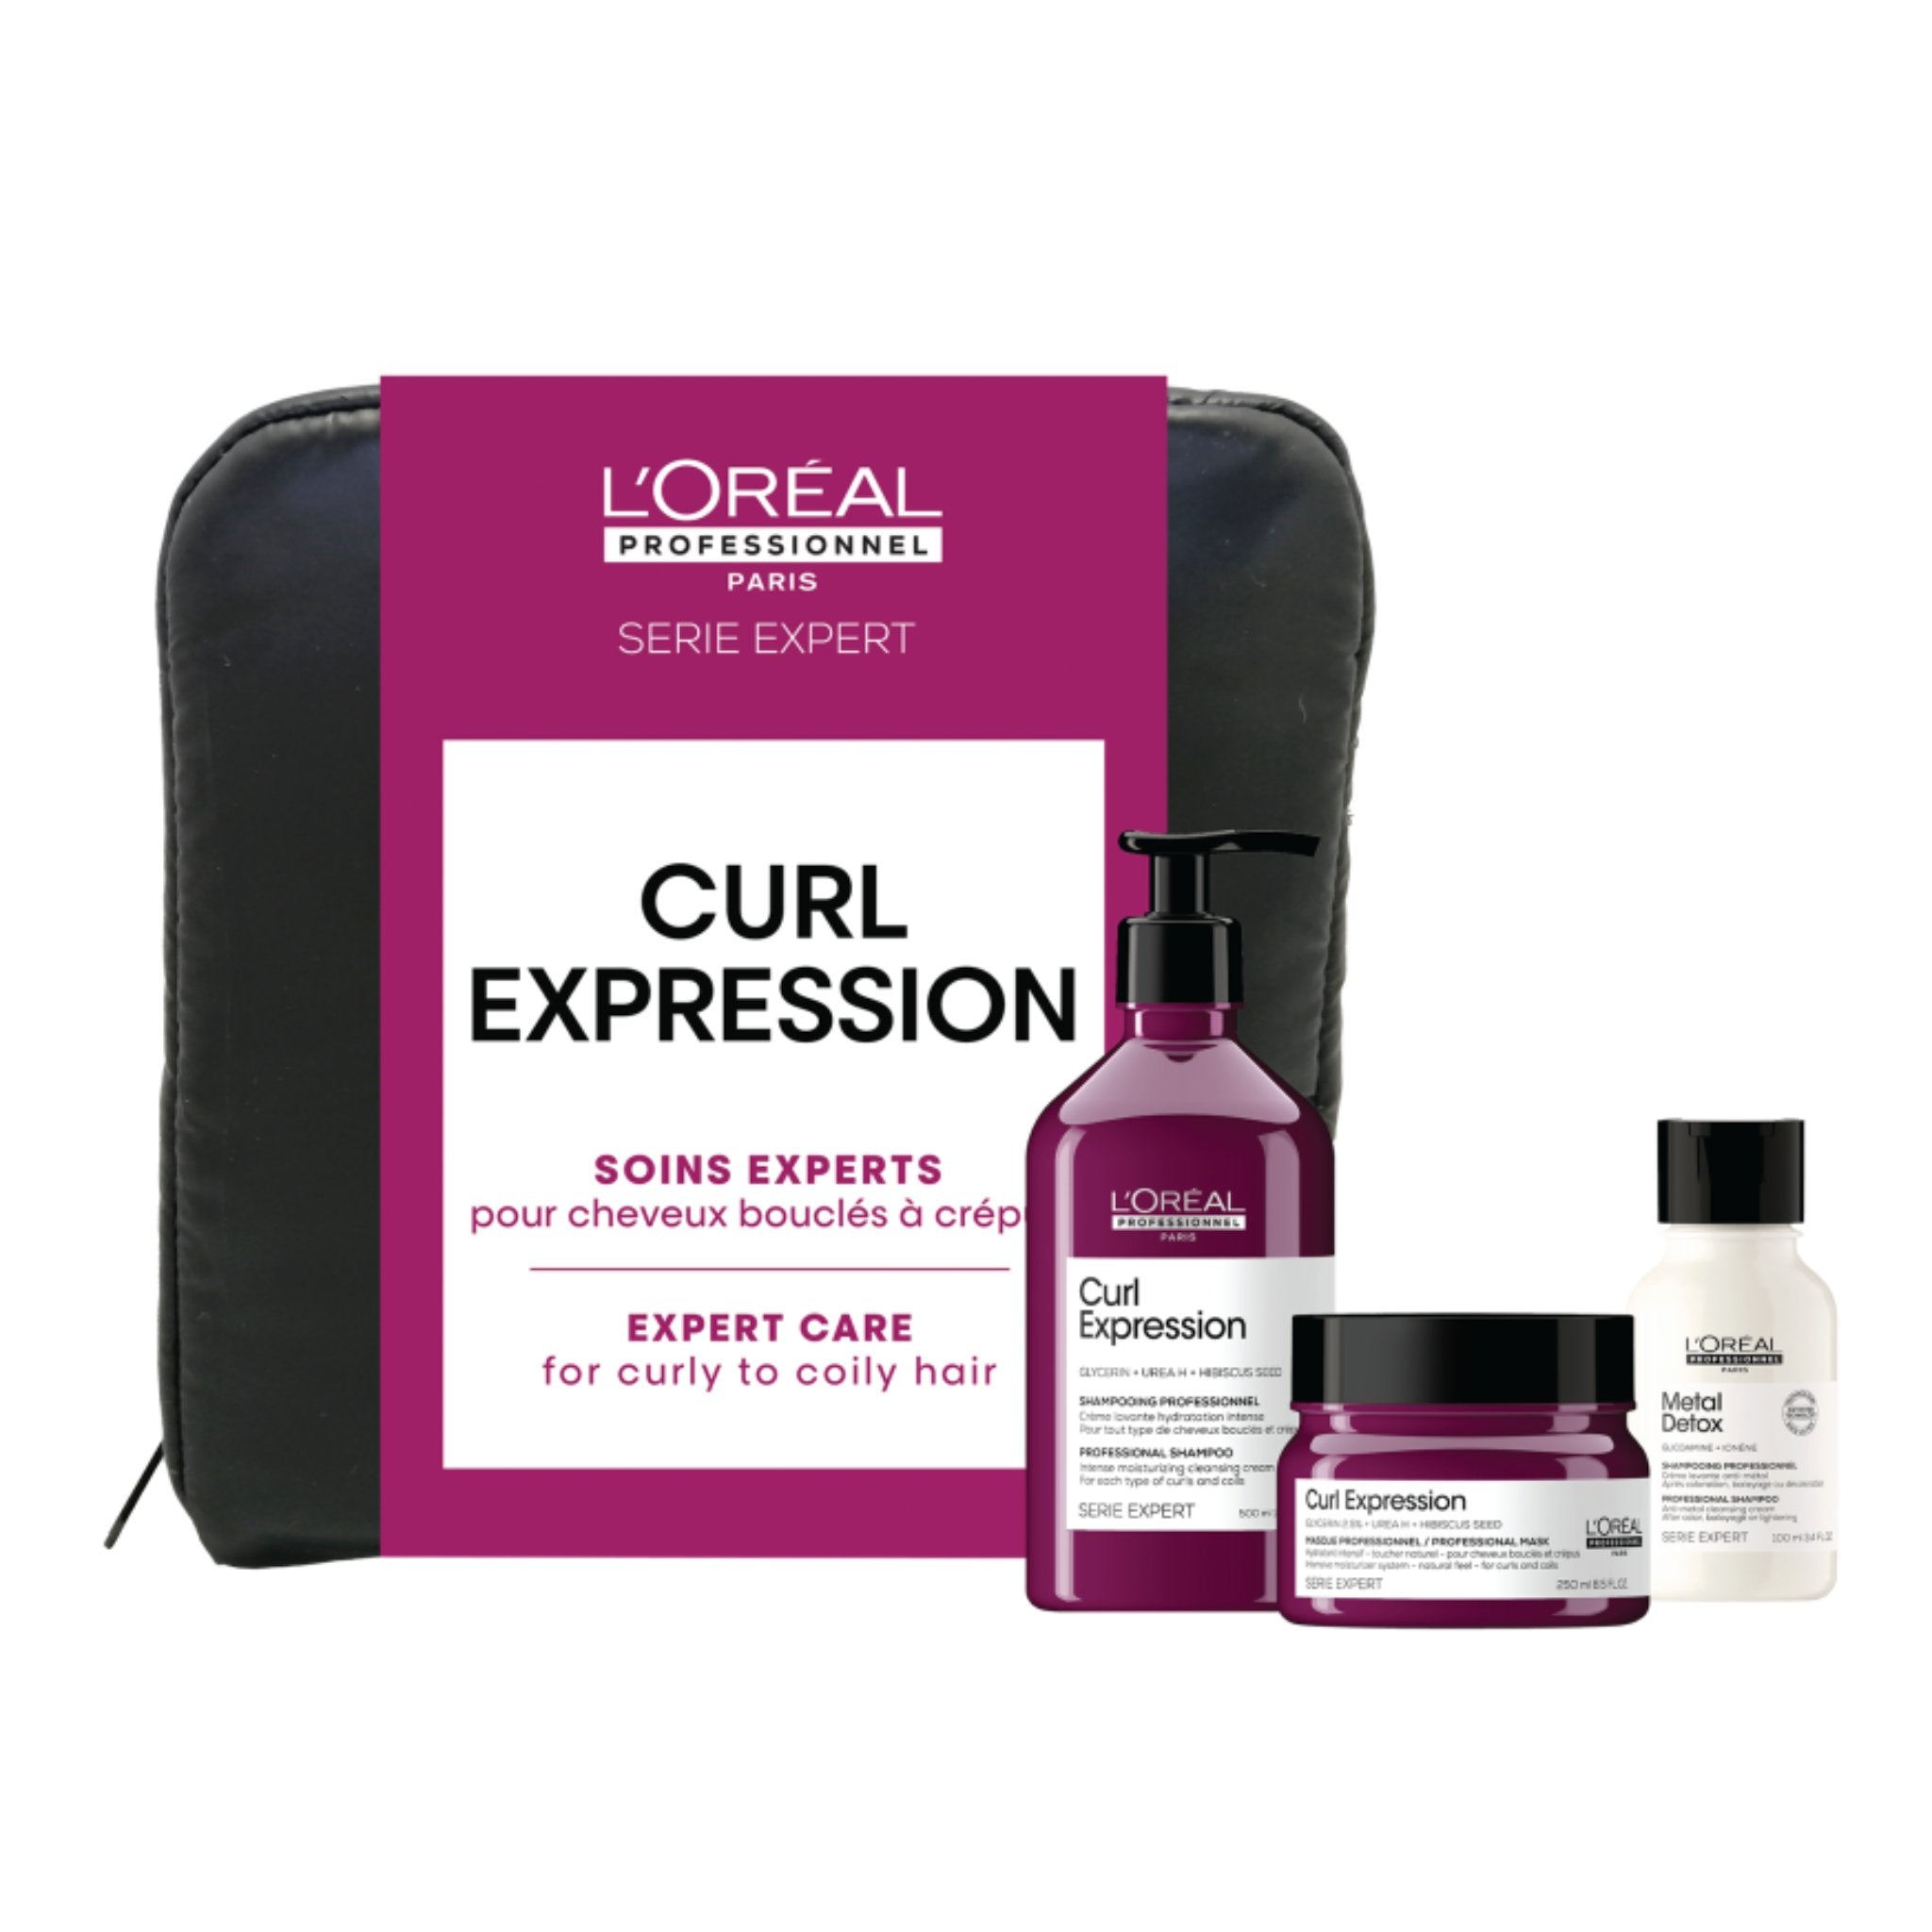 L'Oréal professionnel. Coffret Cheveux Frisés Curl Expression - Concept C. Shop